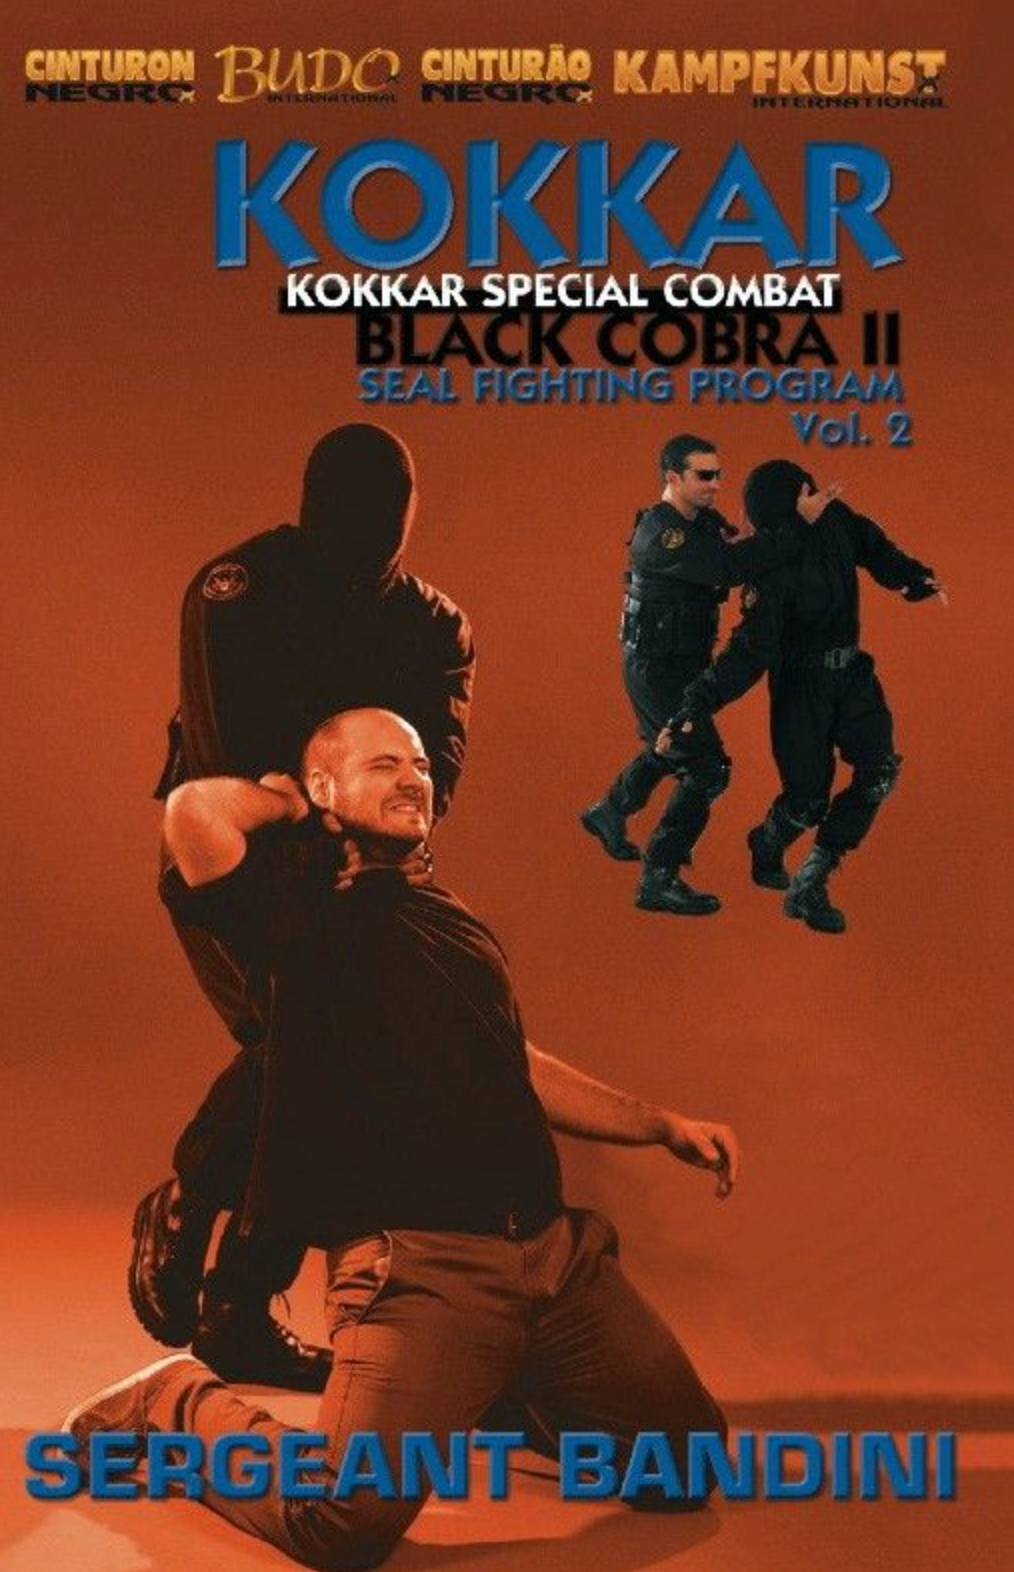 Kokkar Black Cobra II Vol 2 DVD by Fernando Bandini - Budovideos Inc